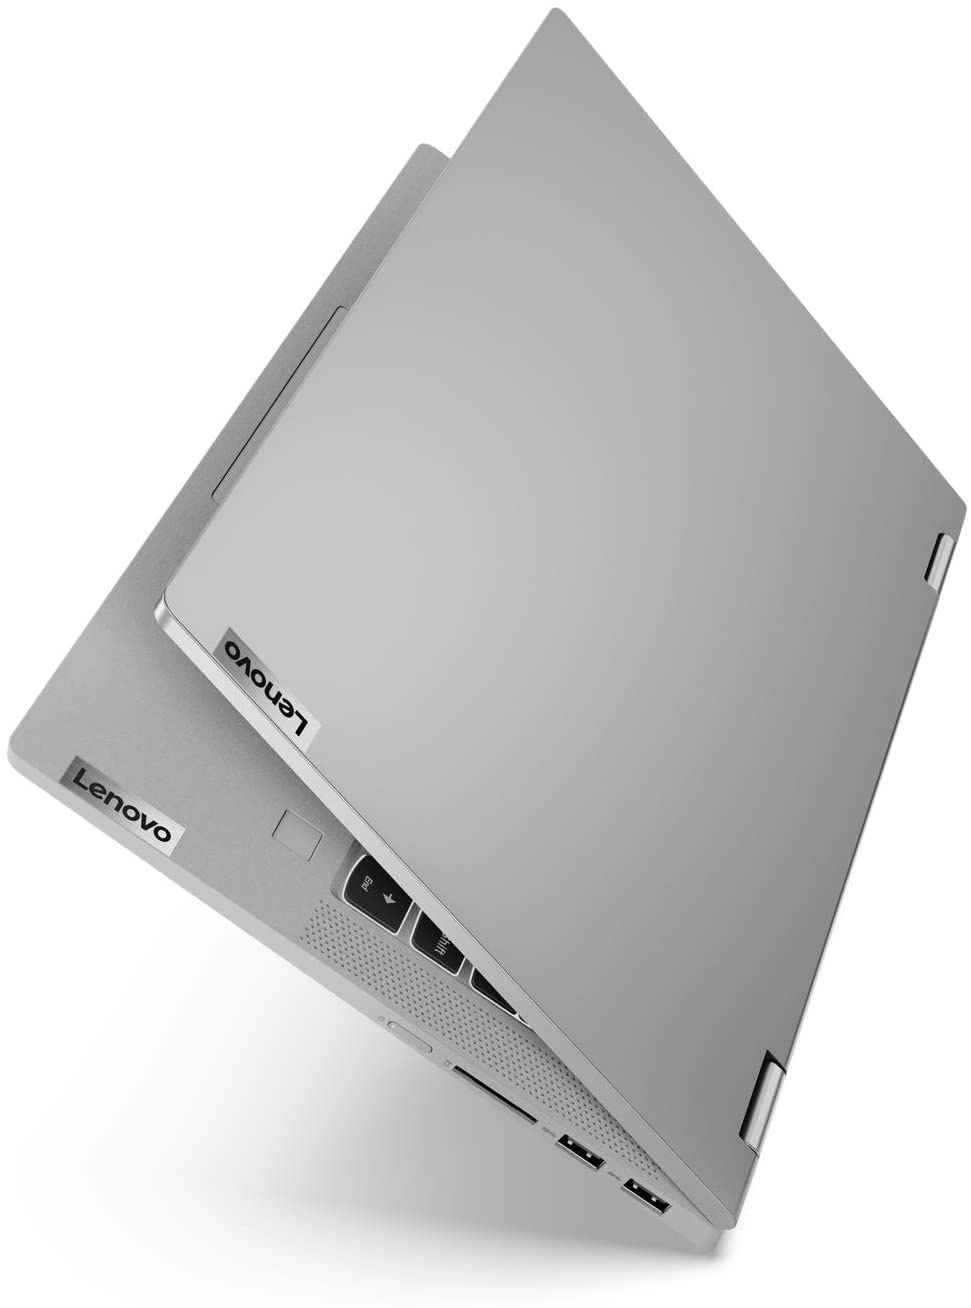 imagen portátil Lenovo IdeaPad Flex 5 14ITL05